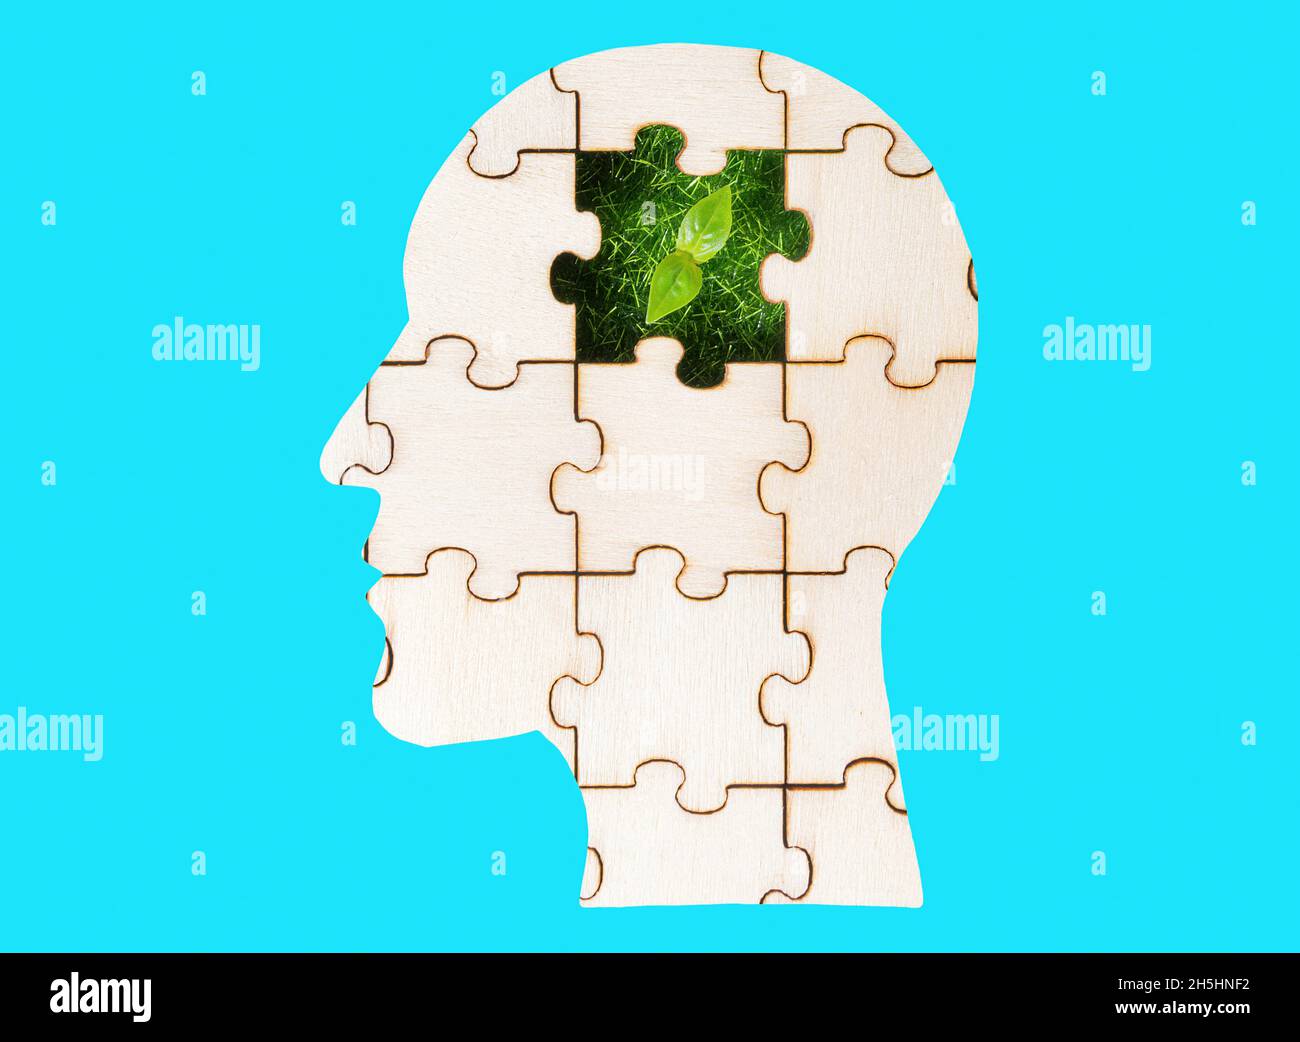 Menschliches Kopf-Puzzle mit einem grünen Sprossen kommt durch das fehlende Stück isoliert auf blauem Hintergrund. Ideen in den Kopf von jemandem Pflanzen. Stockfoto